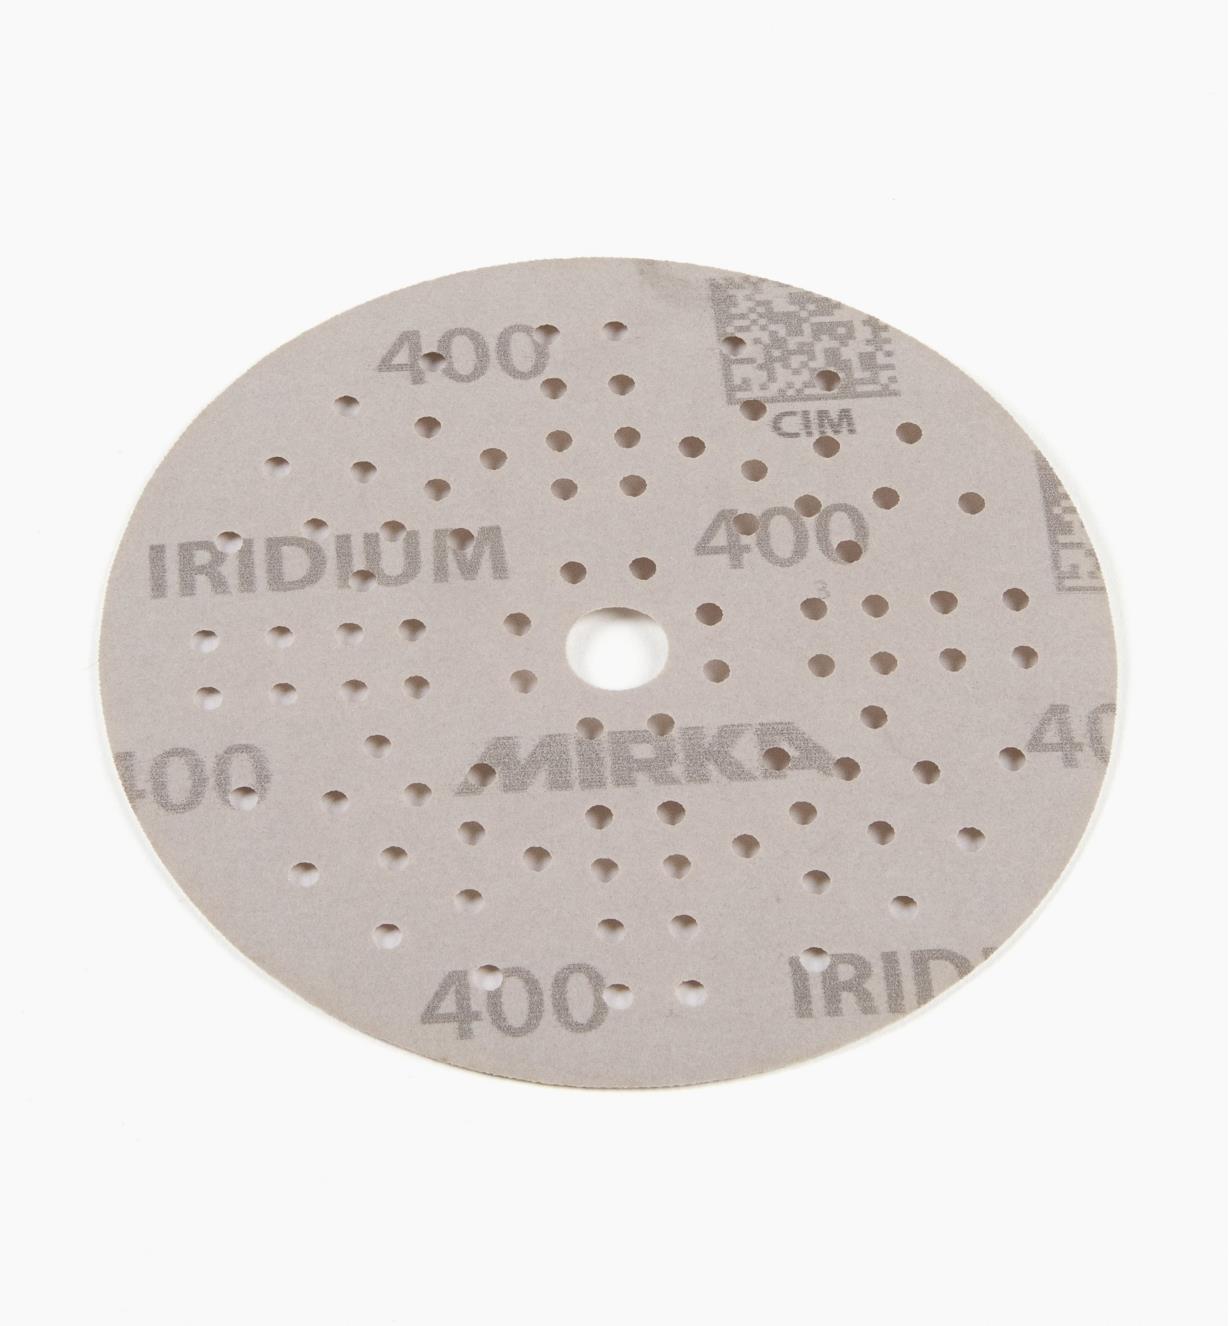 08K0930 - Disque abrasif autoagrippant Iridium, 5 po, 89 trous, grain 400, l'unité